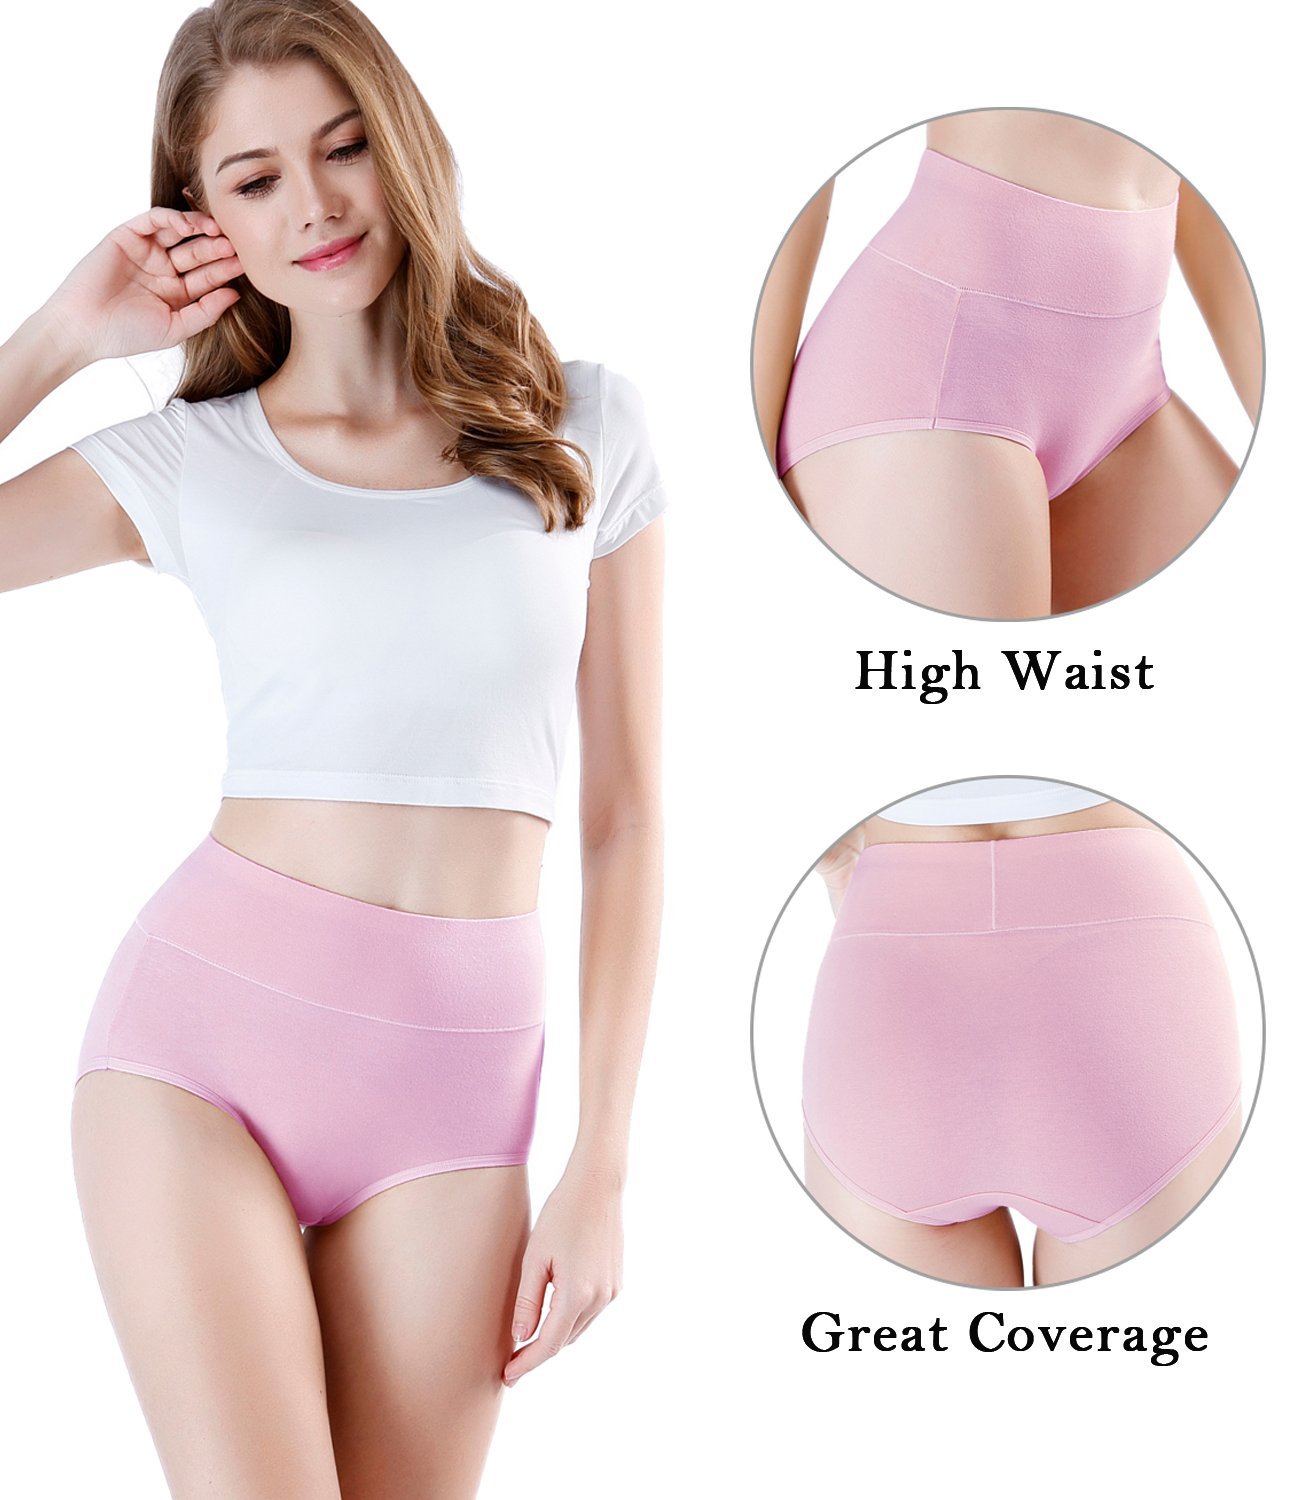 wirarpa Women's High Waist Full Coverage Cotton Underwear 4 Pack